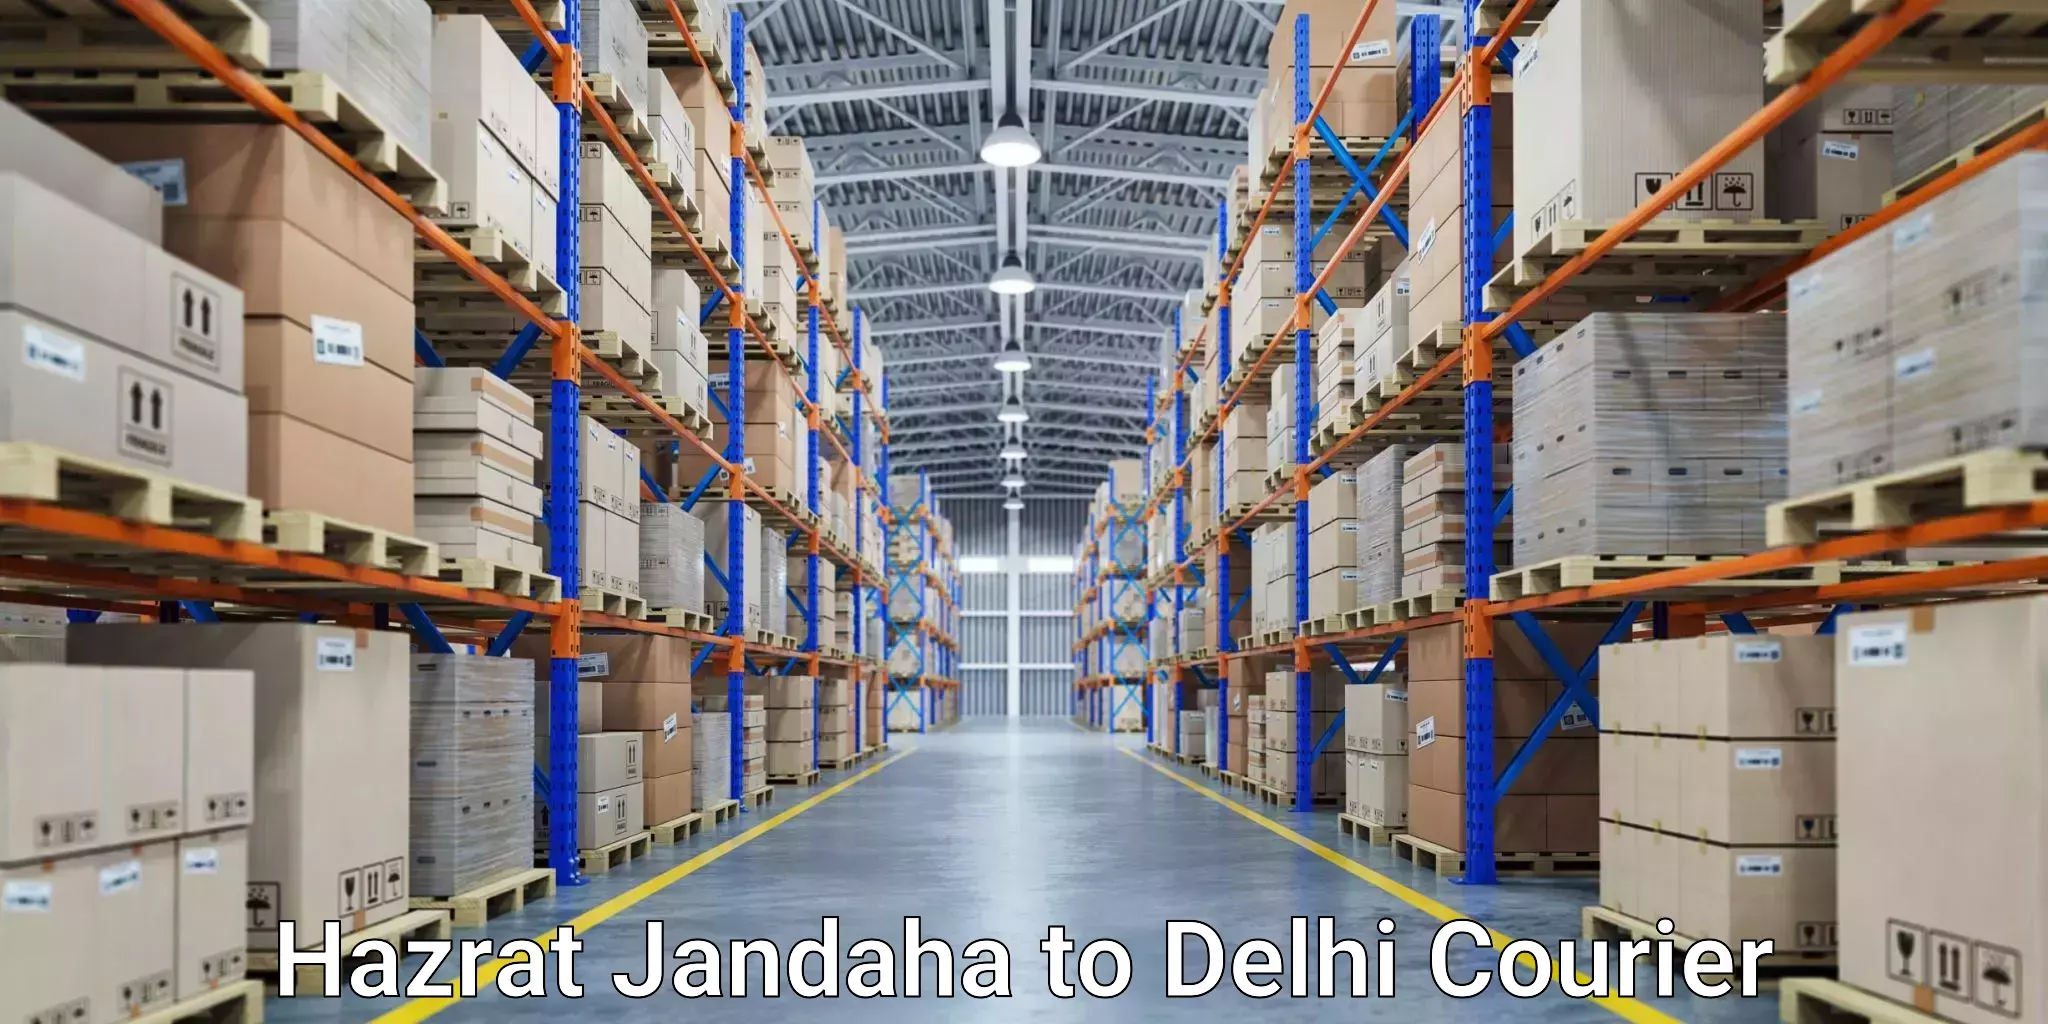 Cost-effective courier solutions Hazrat Jandaha to IIT Delhi